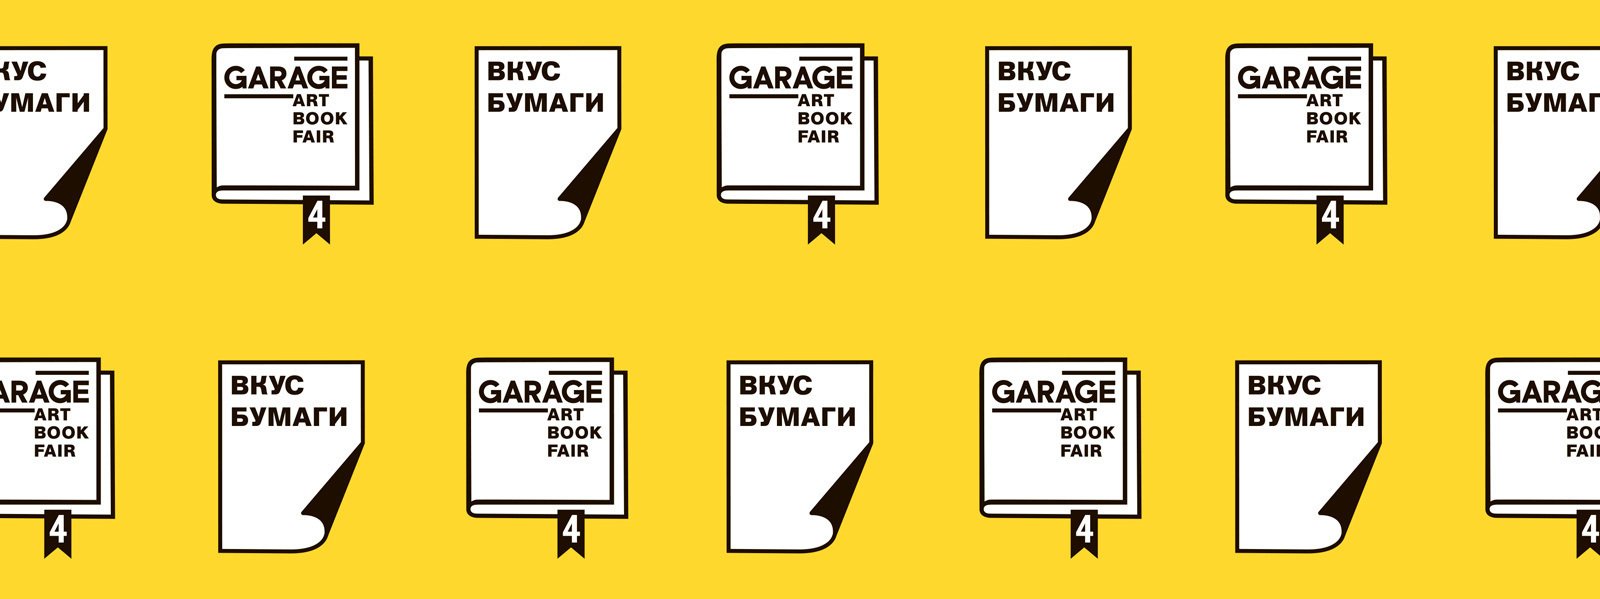 Garage Art Book Fair and Vkus Bumagi Print Market